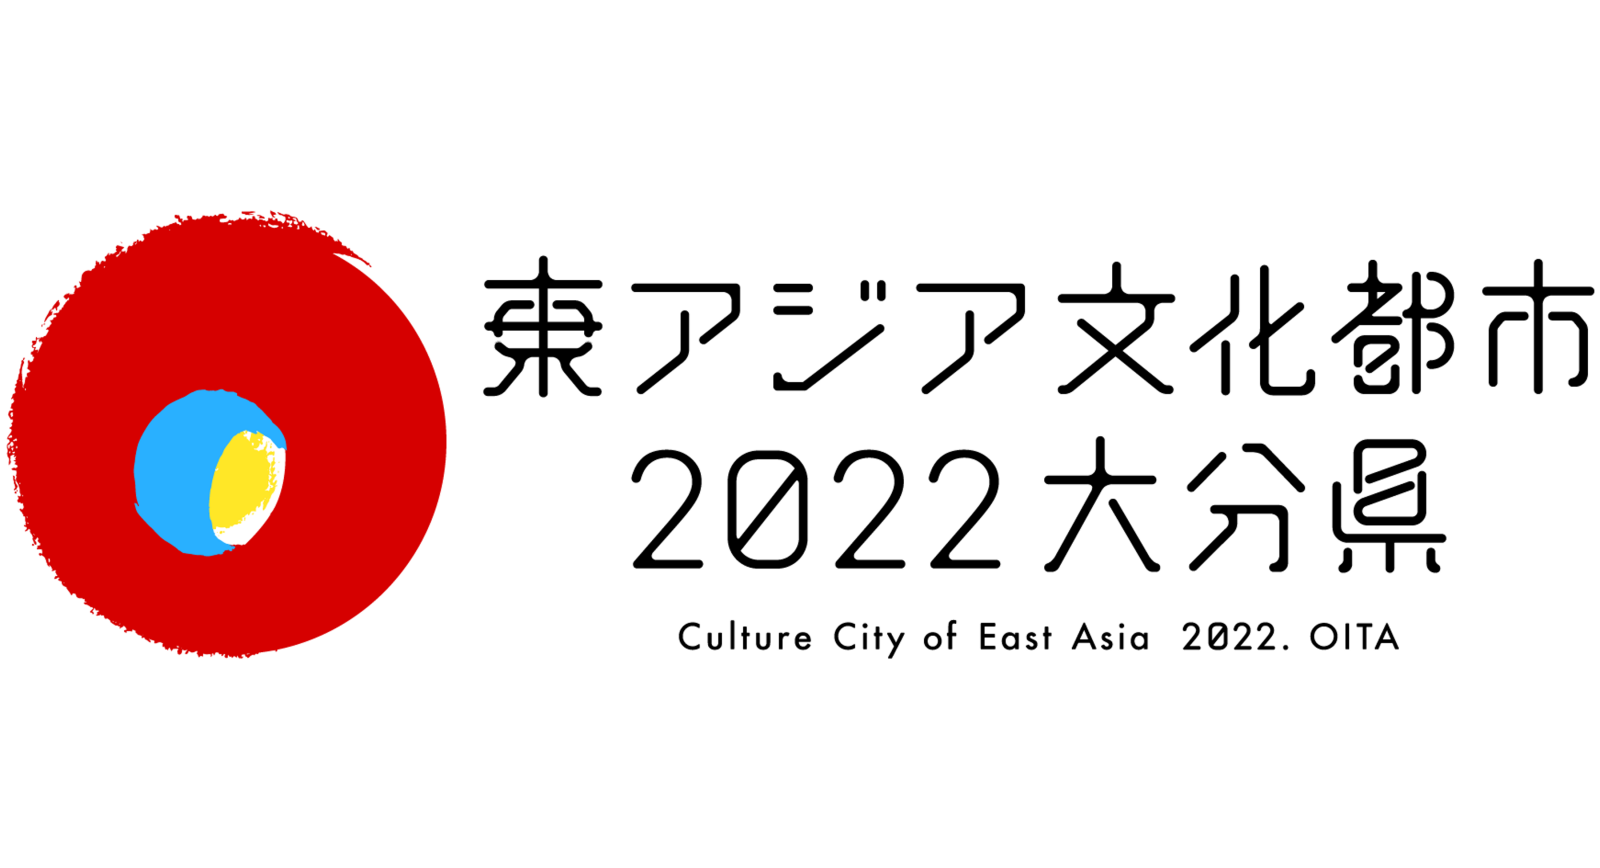 「東アジア文化都市 2022 大分県」事業内容